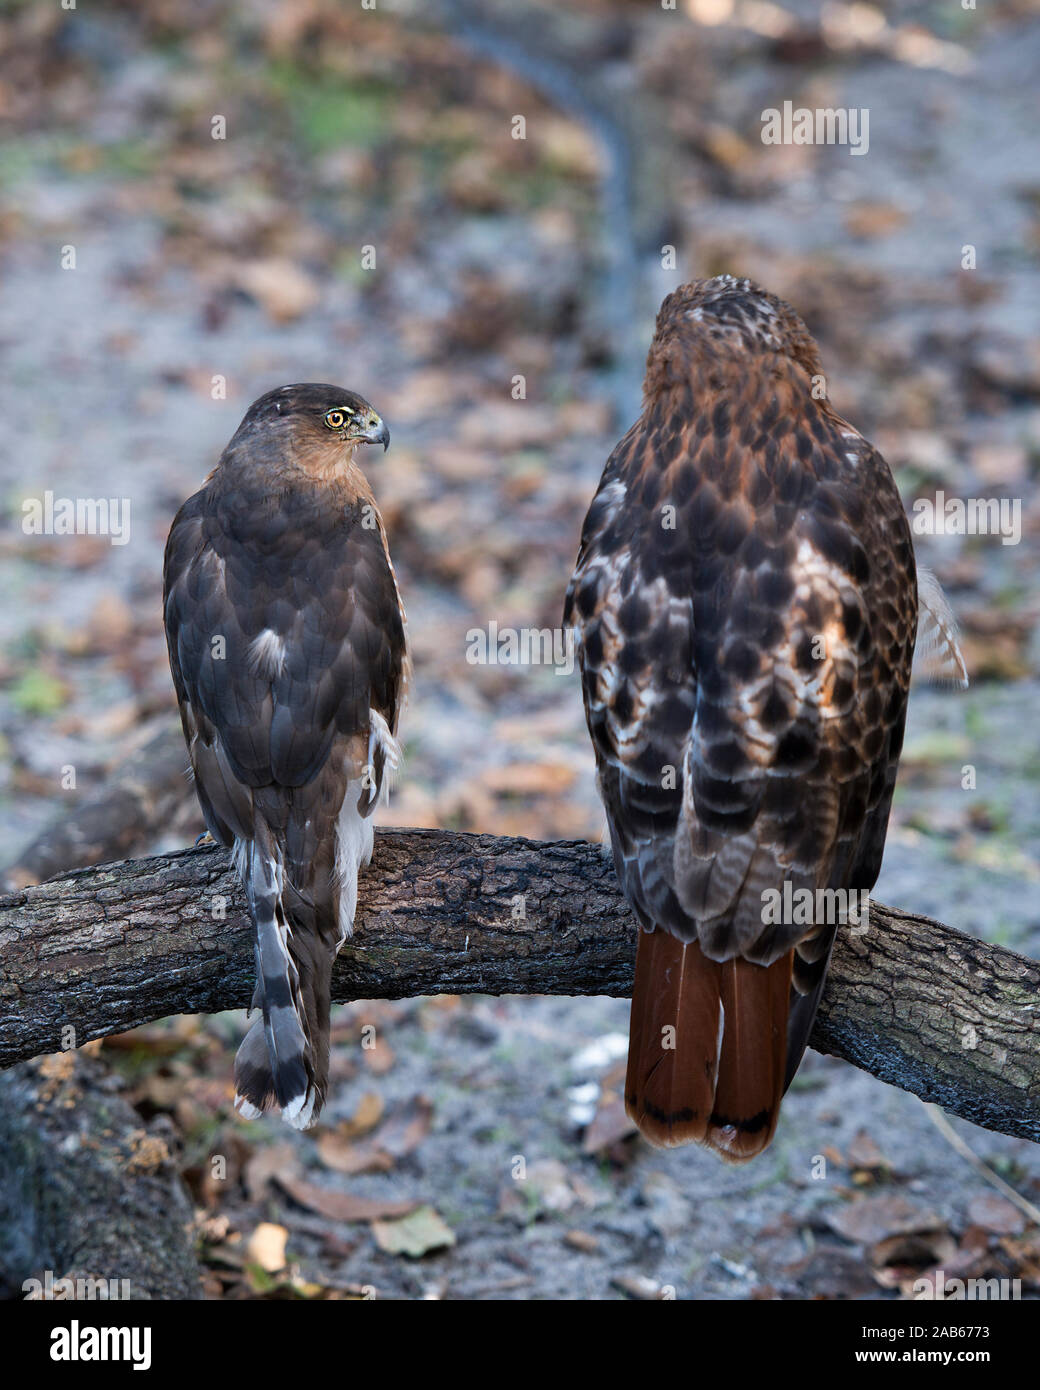 Hawk Vögel thront, während ihre Körper, Kopf, Augen, Schnabel, Schwanz, Gefieder mit einem Laub Hintergrund in seiner Umgebung und Umwelt herausstellen. Stockfoto